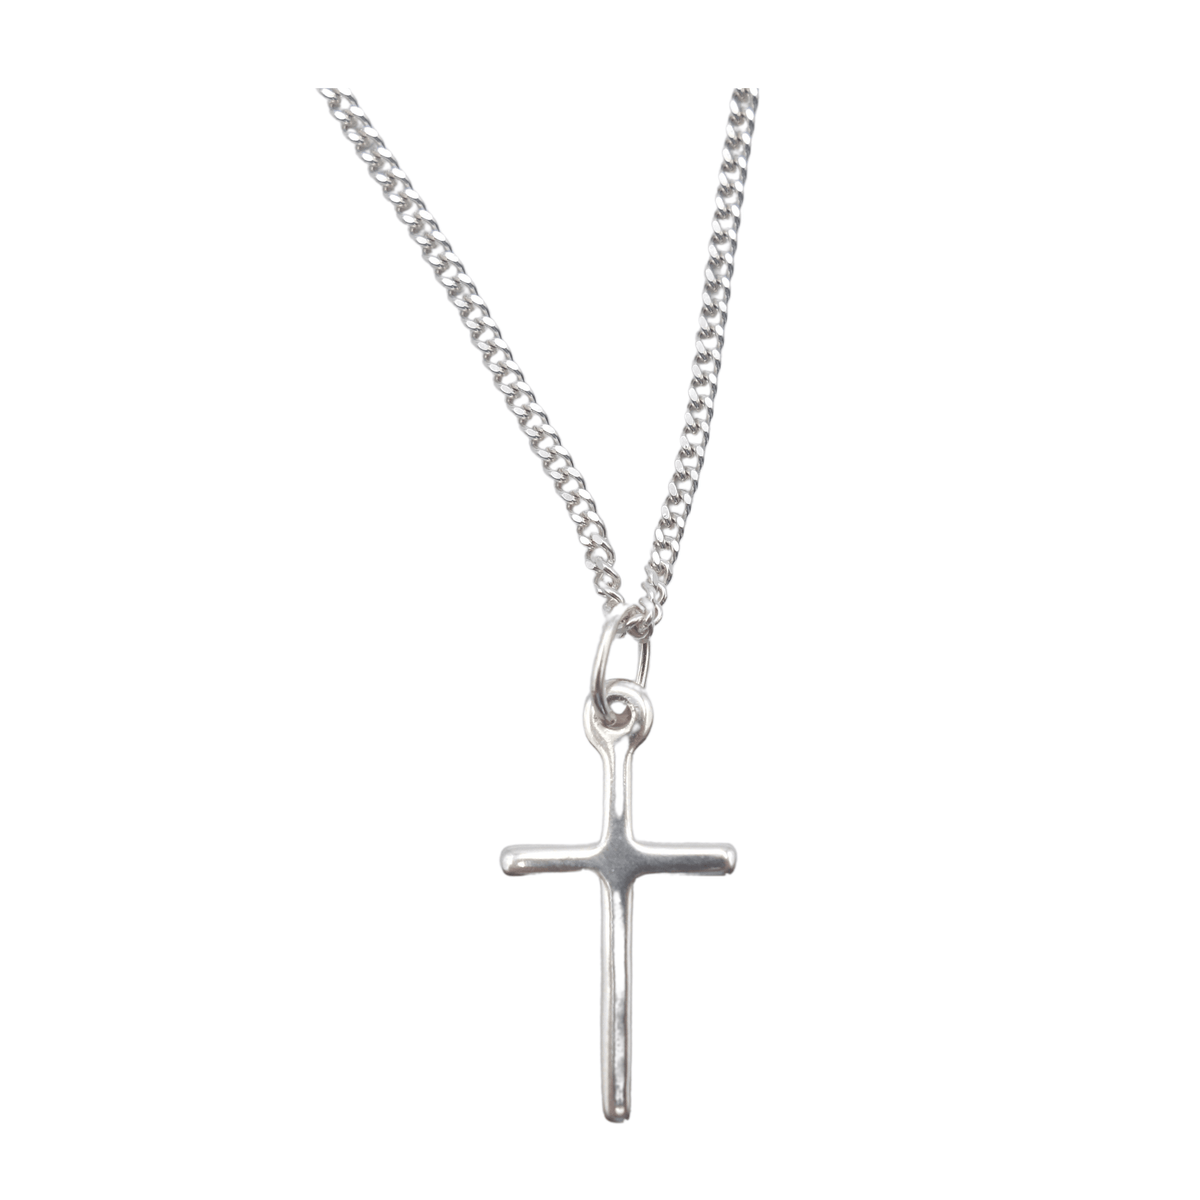 Parure argentée composée d'une  croix  12x23 mm et d'une chaine en 45 cm - Parure argentée composée d'une  croix  12x23 mm et d'une chaine en 45 cm